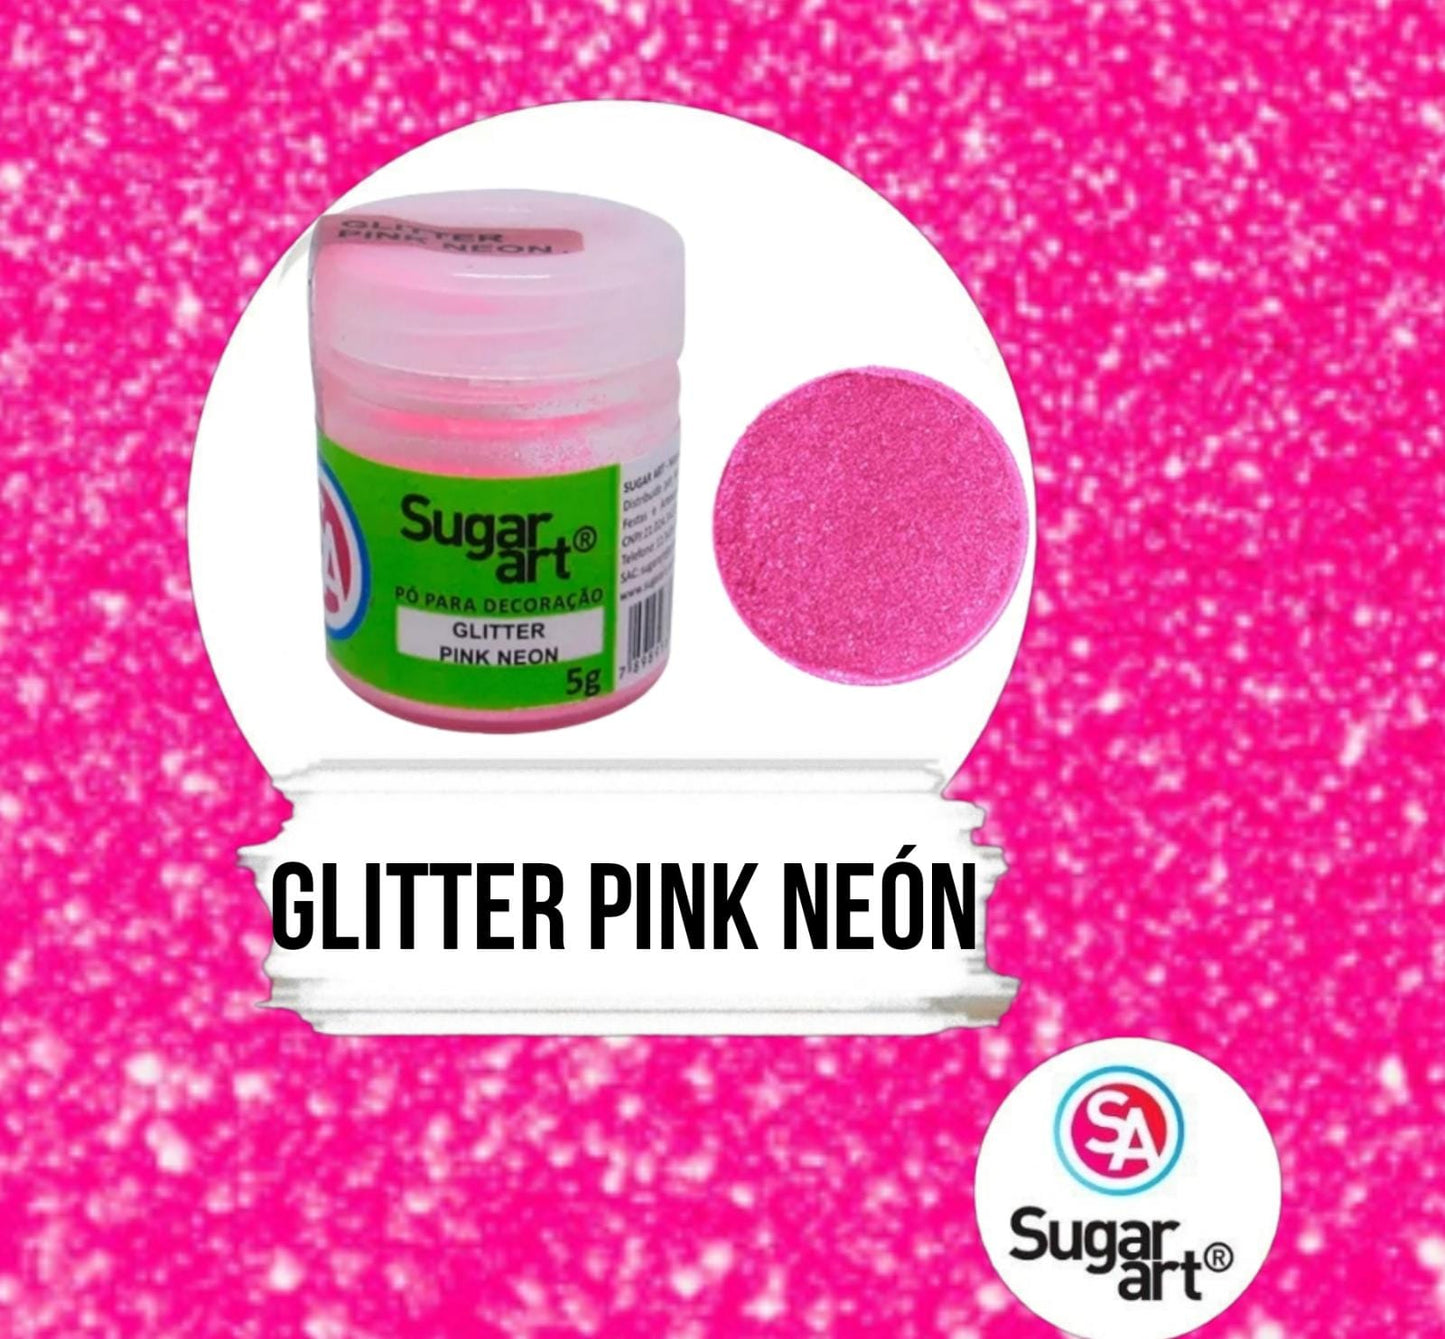 Glitter Brillantina Sugar Art PINK NEÓN 5g